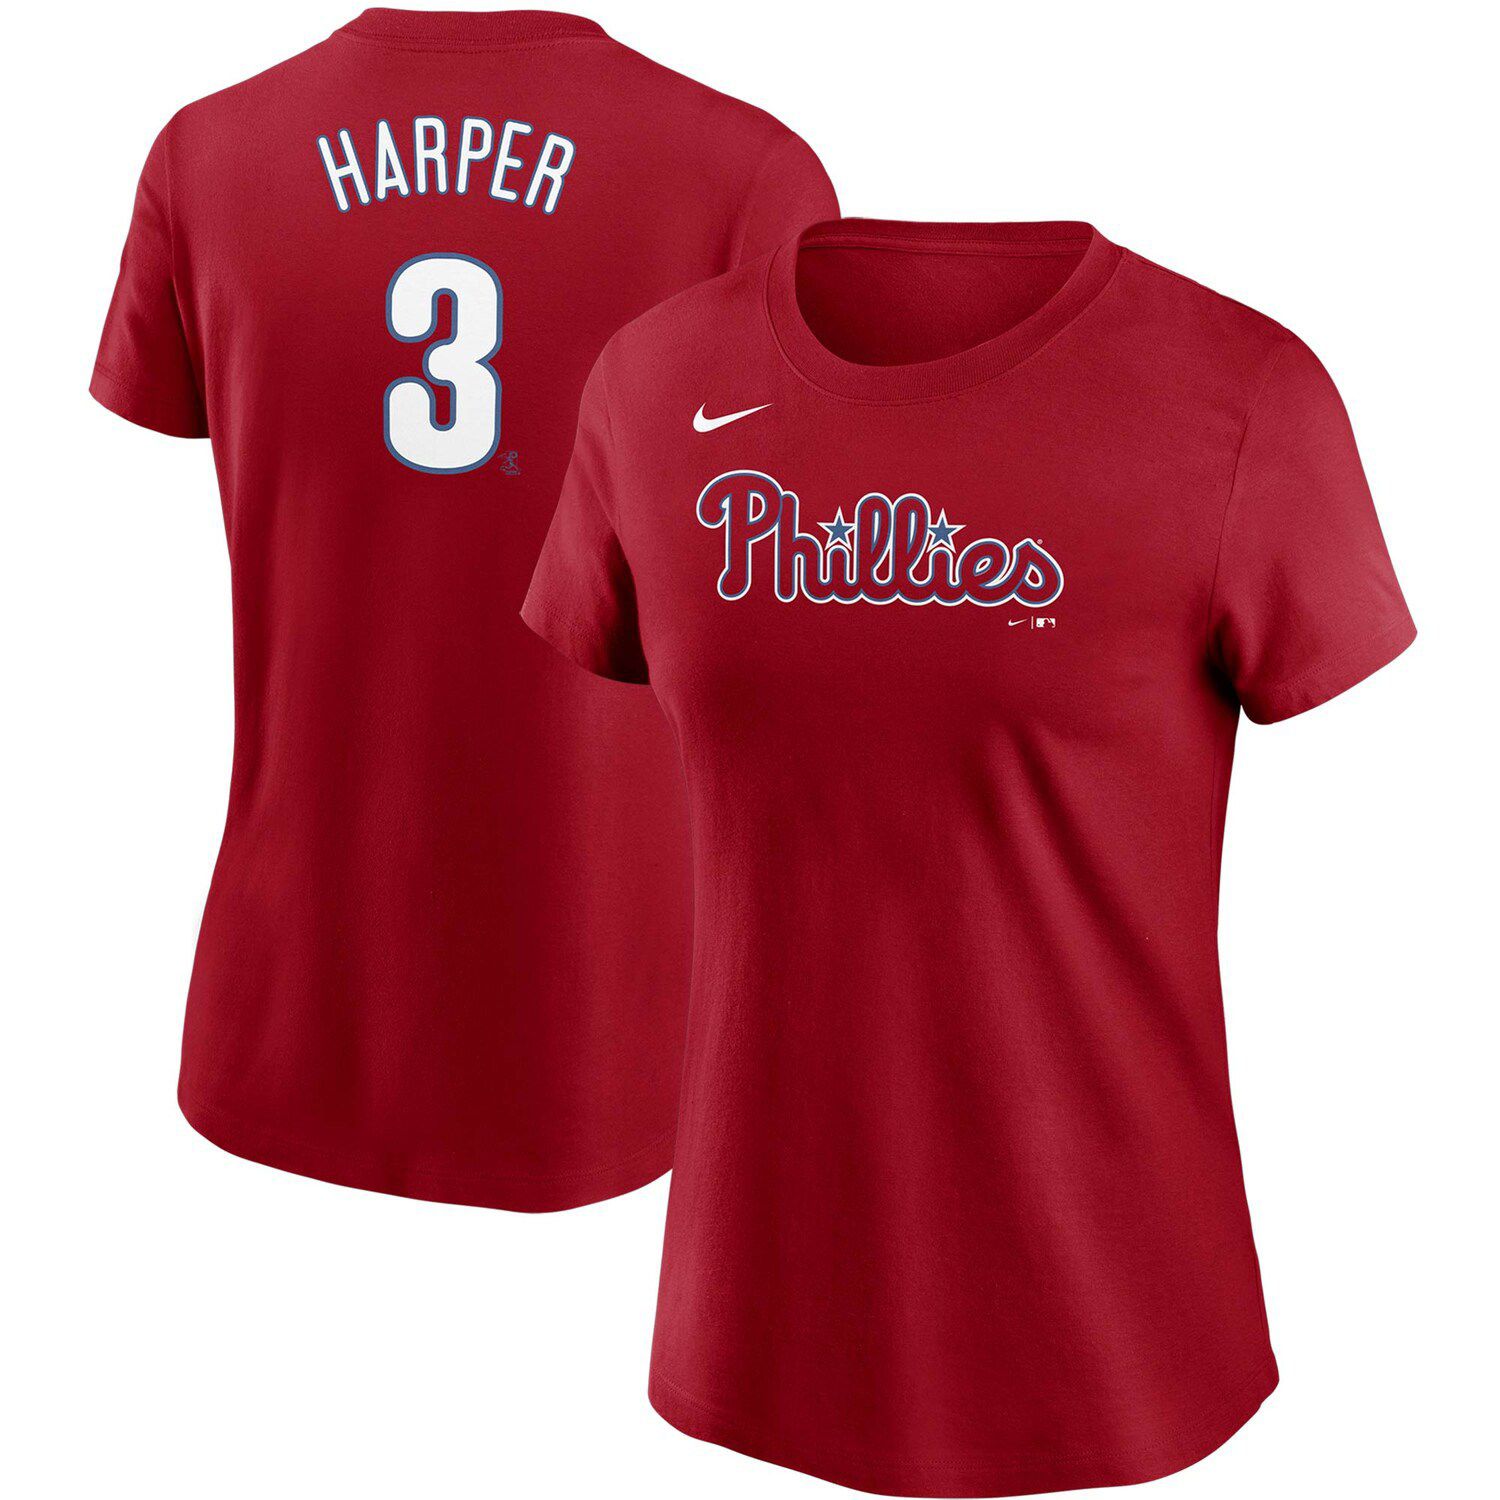 bryce harper women's t shirt